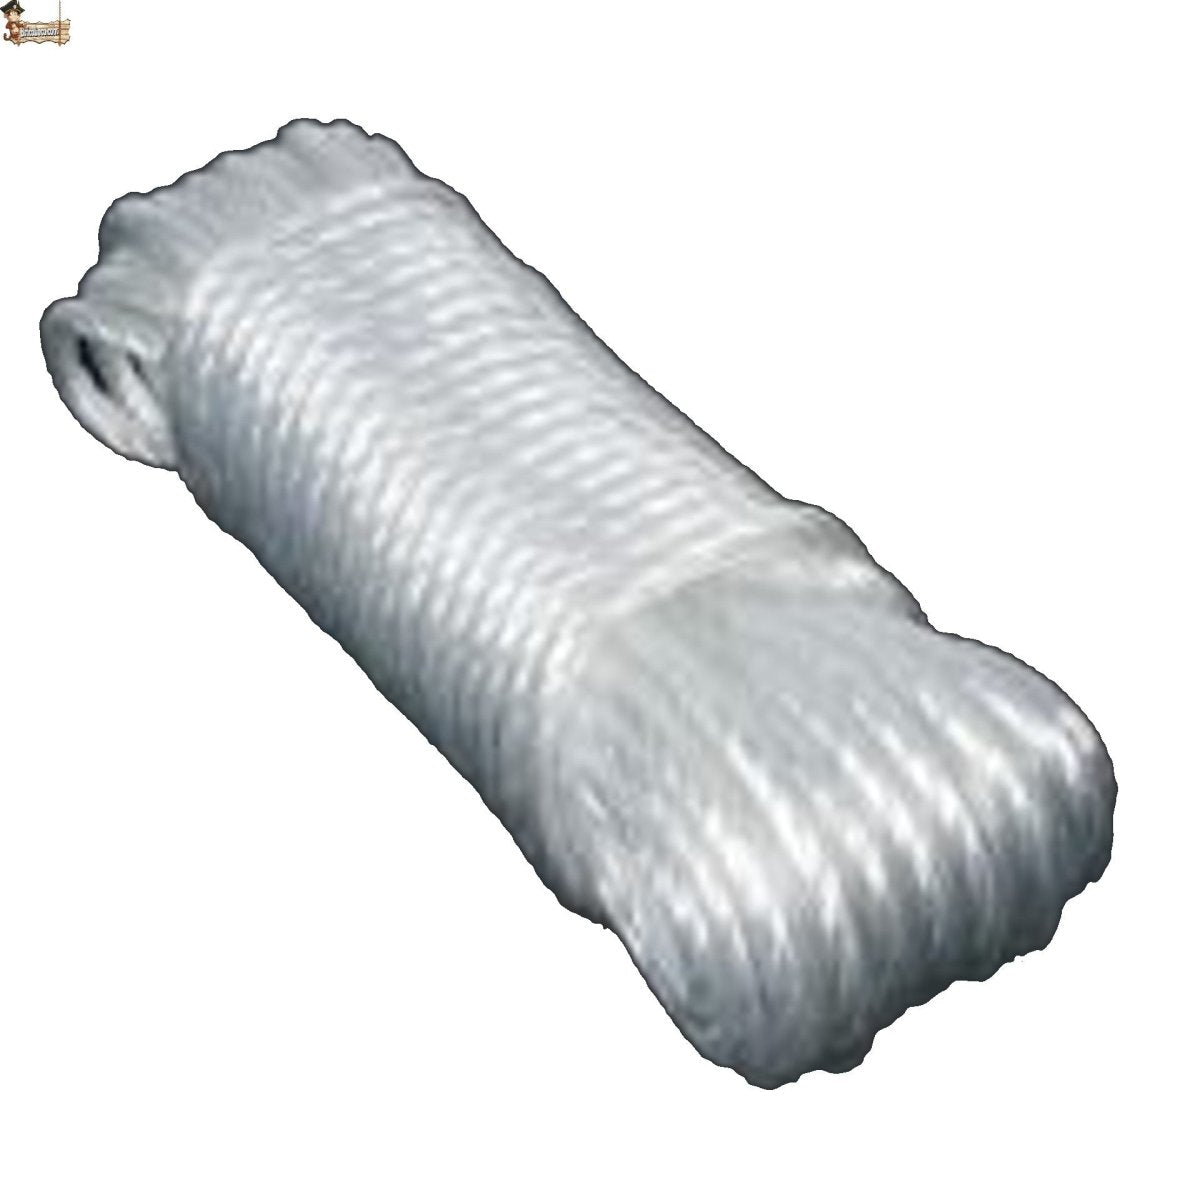 Tradineur - Cuerda trenzada de polipropileno, madeja de cordón resistente  para tendedero, colgar ropa, uso interior y exterior (